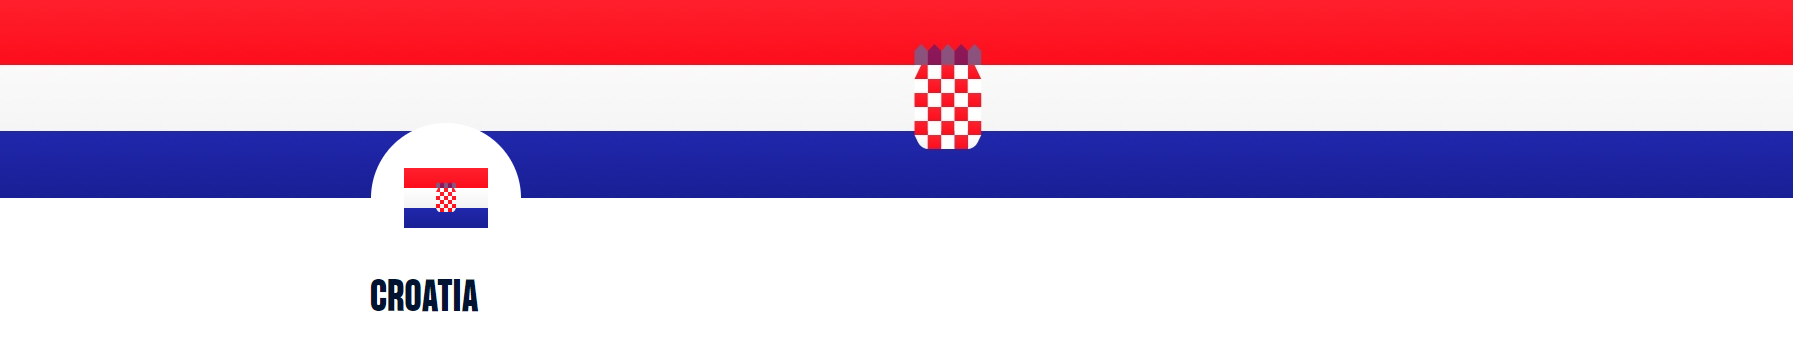 Veliki gaf EHF-a: Pa kakva vam je ovo hrvatska zastava?!